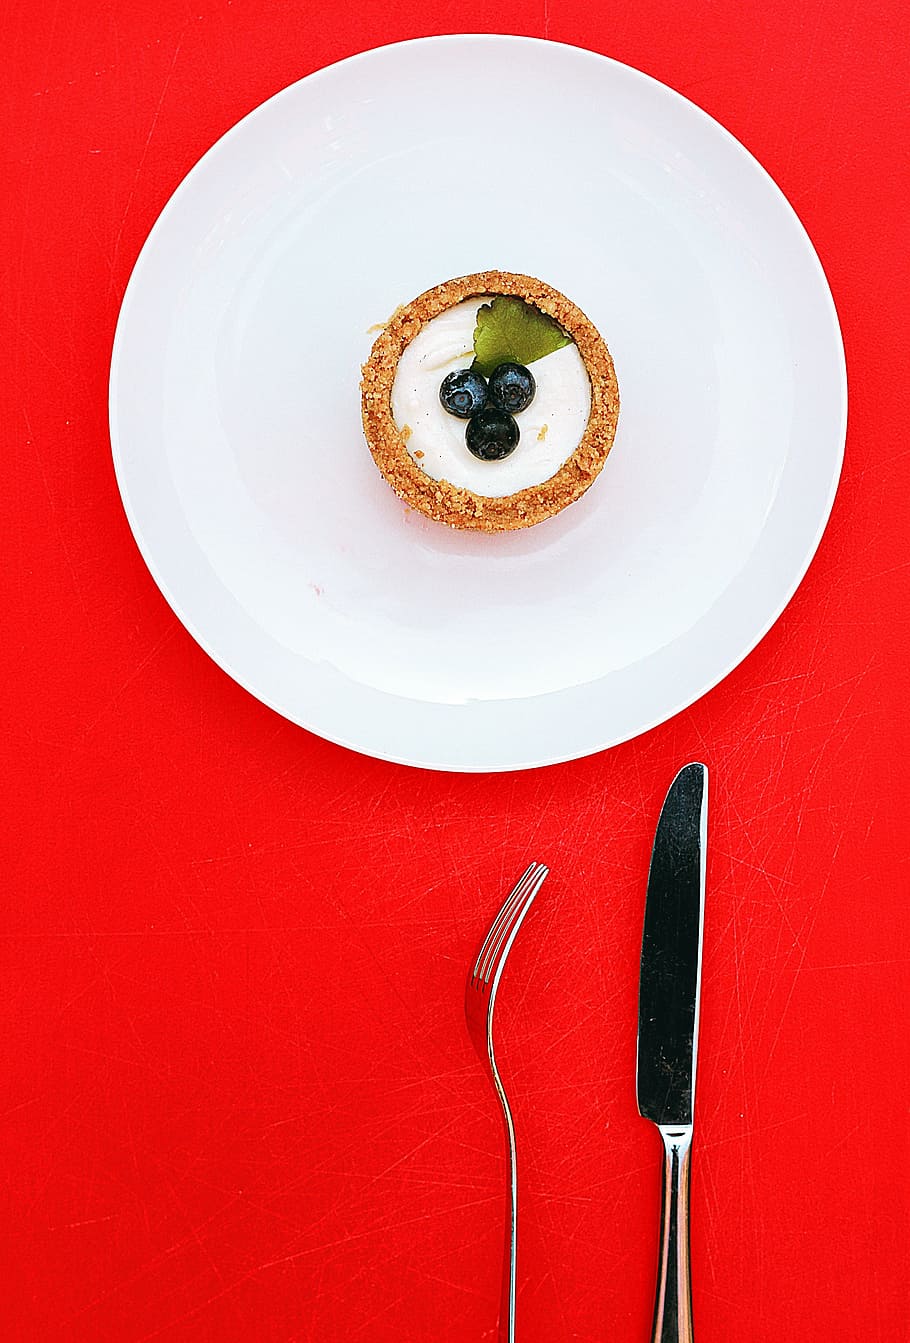 blackberry cake, white, ceramic, plate, round, near, stainless, steel, knife, fork